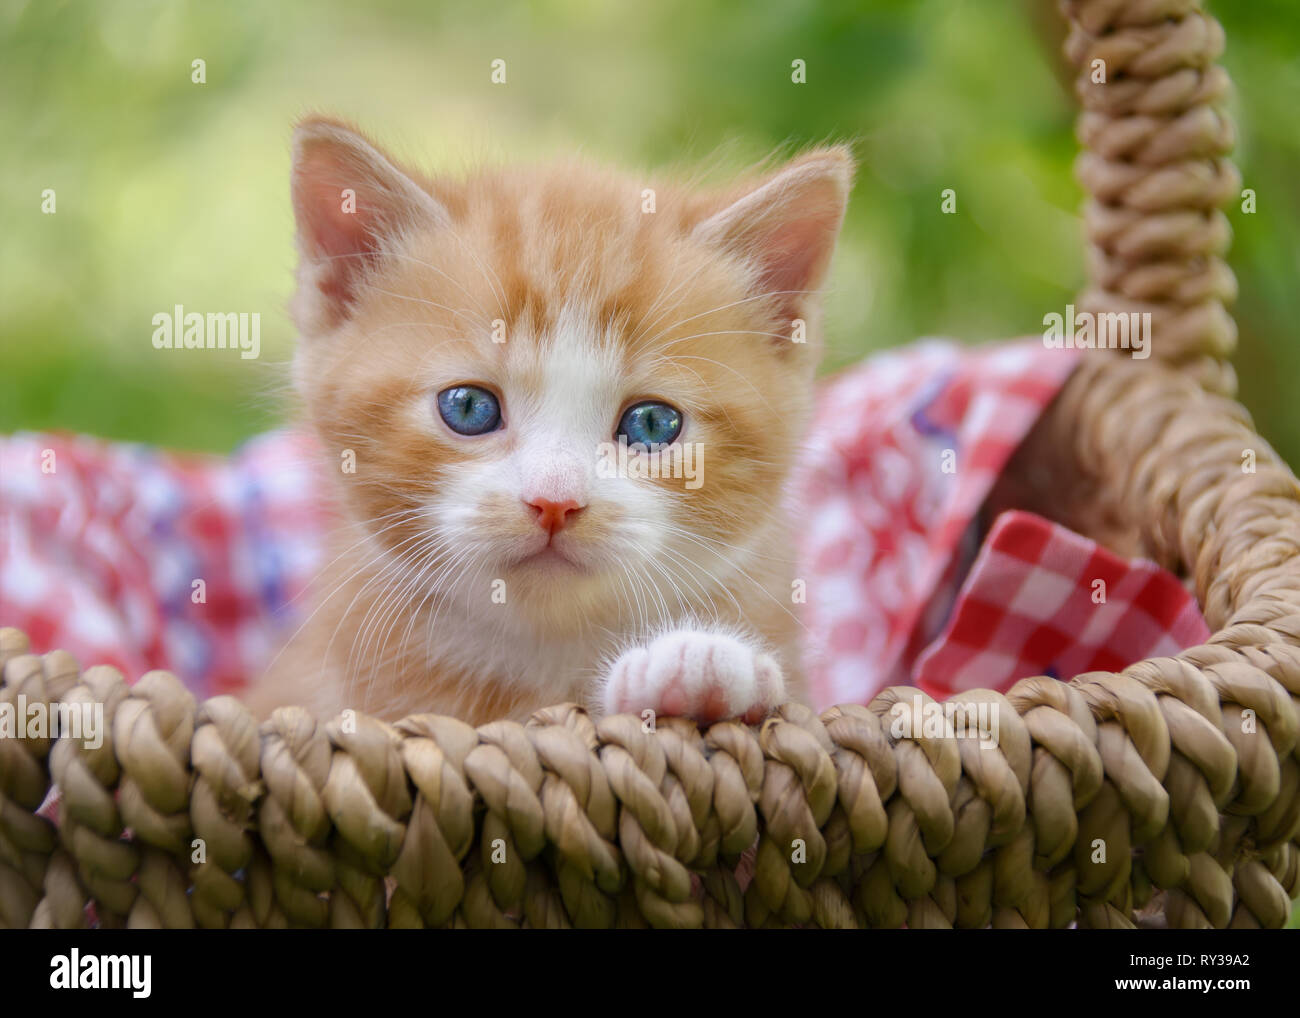 Cute rot-tabby-weiß Baby Katze Kätzchen mit wunderschönen blauen Augen in  einem Weidenkorb in einem Garten sitzen und neugierig beobachten  Stockfotografie - Alamy